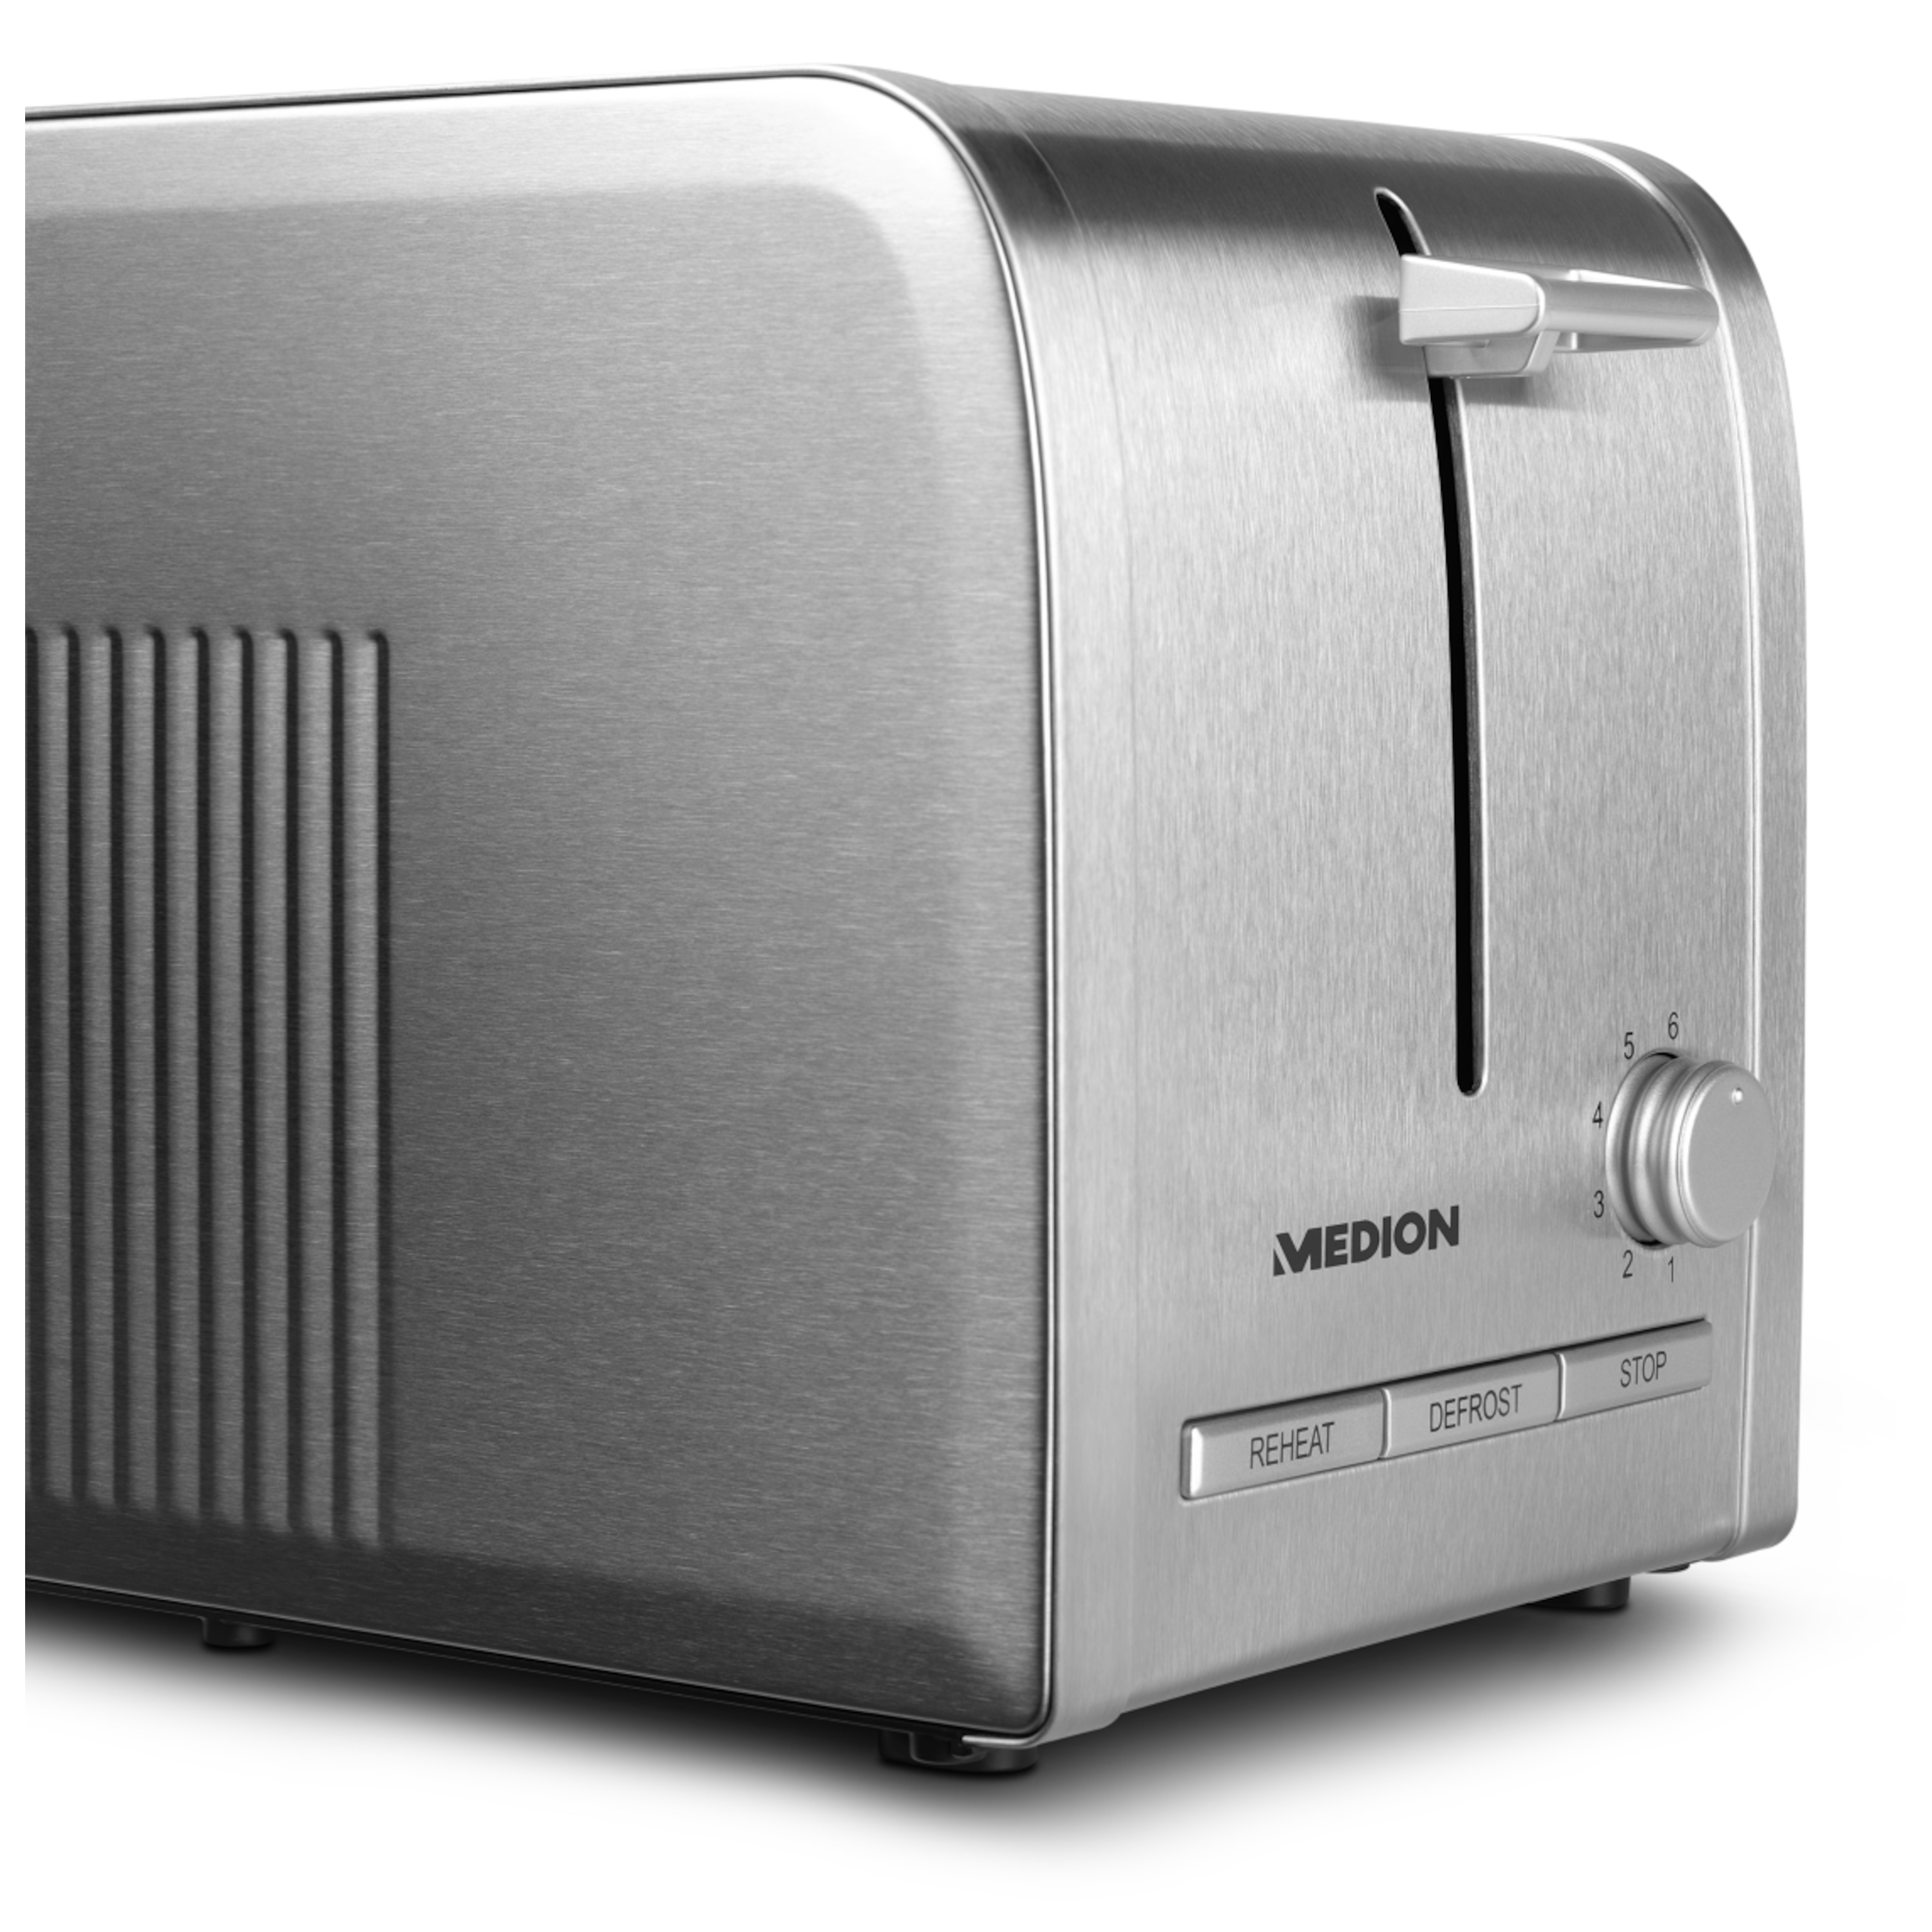 MEDION® Edelstahl-Toaster MD 16232, Edelstahlgehäuse, 870 Watt, Aufwärm-, Auftau- und Stopptaste, Bräunungsgrad-Regler